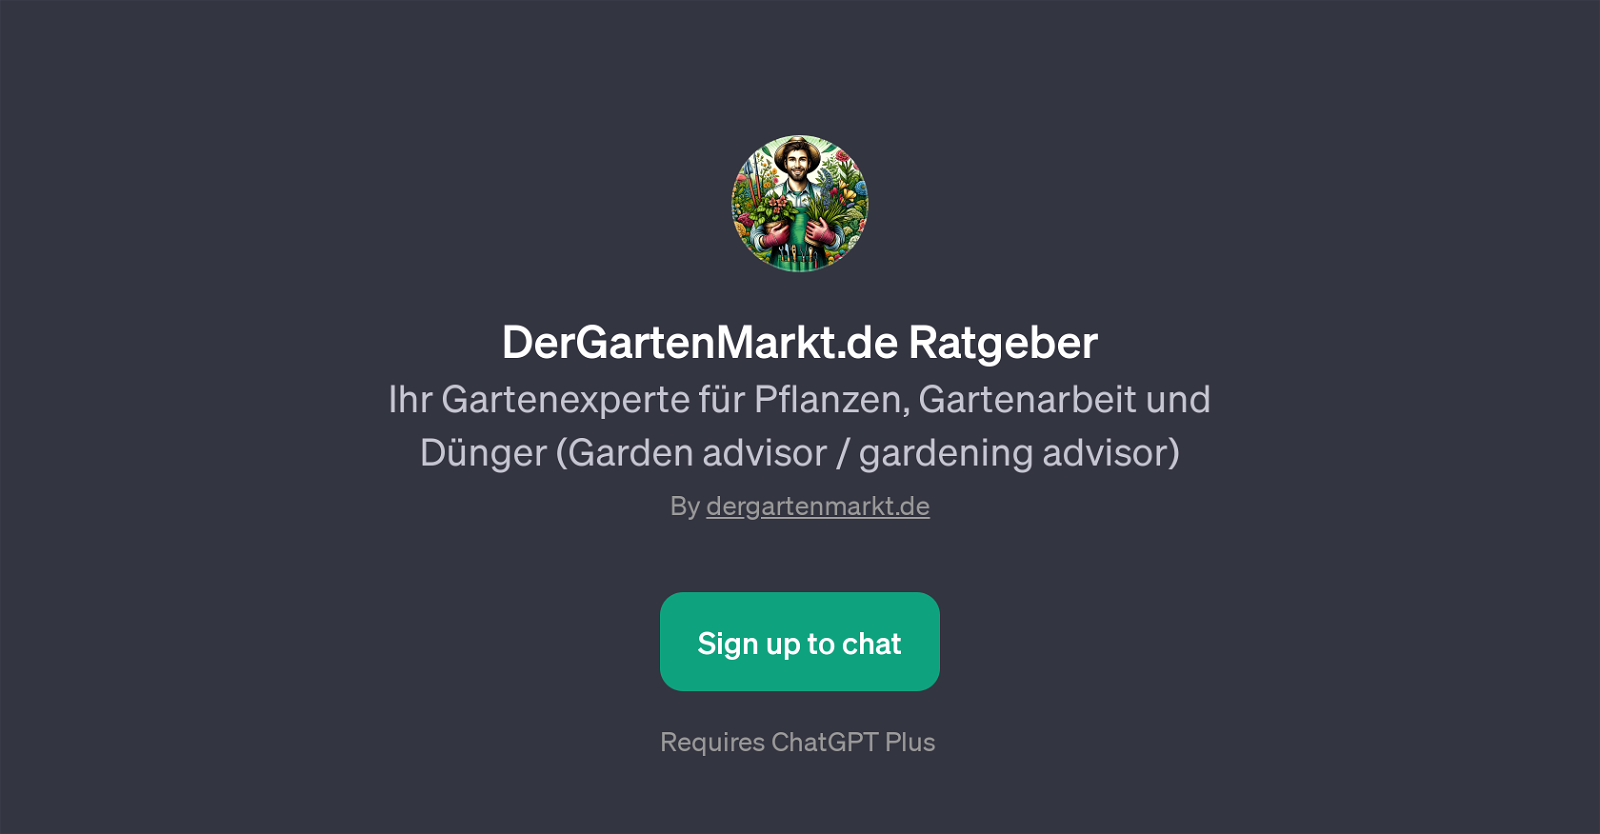 DerGartenMarkt.de Ratgeber website